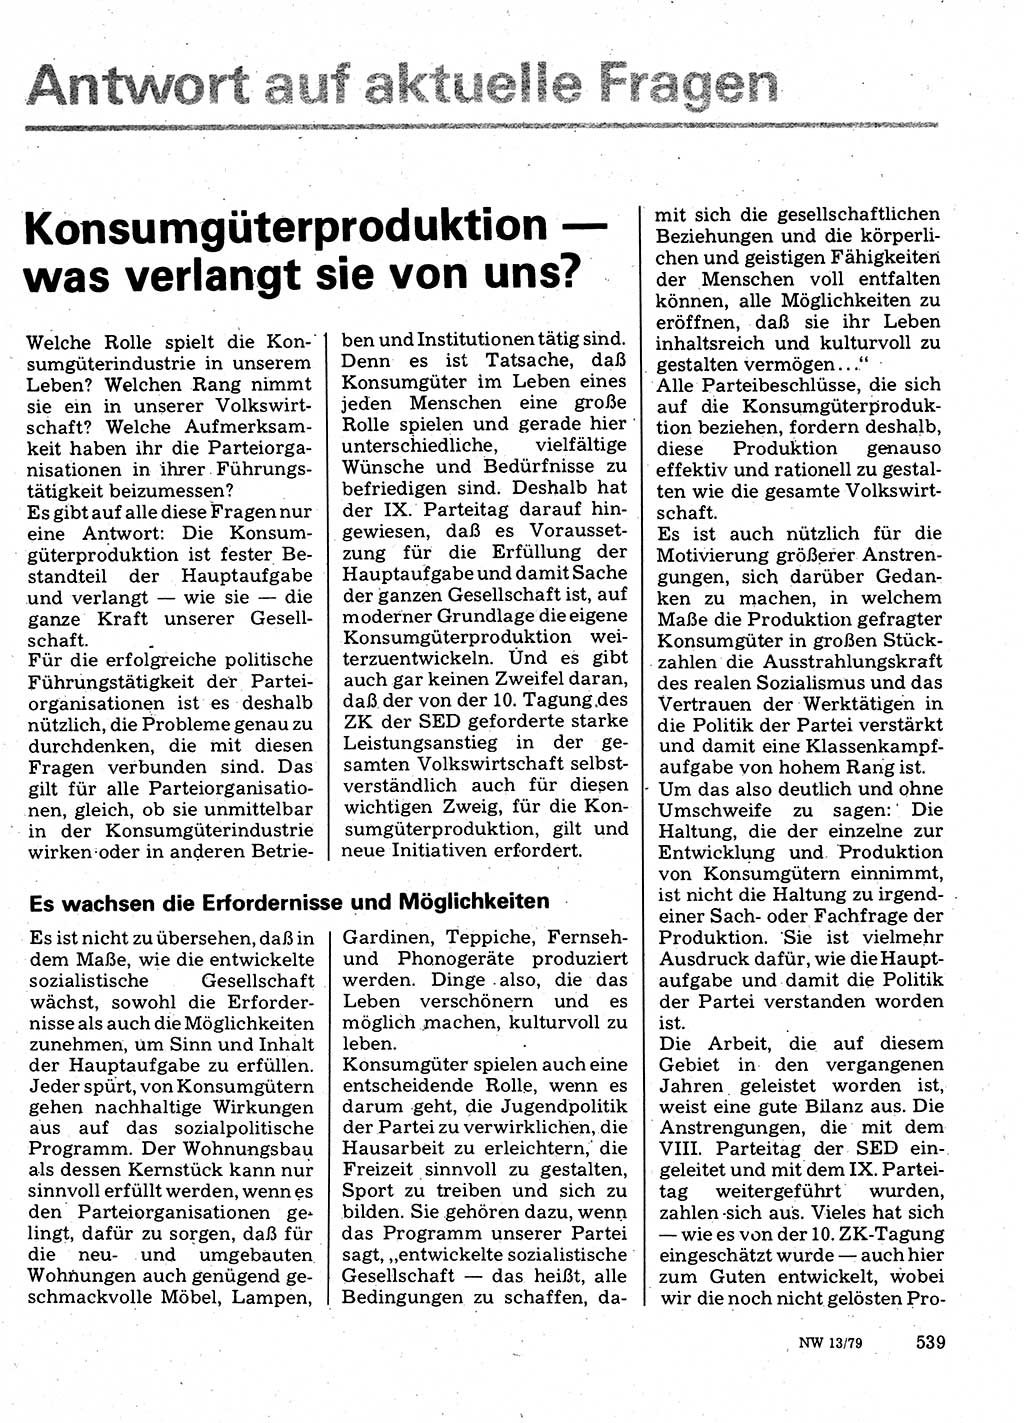 Neuer Weg (NW), Organ des Zentralkomitees (ZK) der SED (Sozialistische Einheitspartei Deutschlands) für Fragen des Parteilebens, 34. Jahrgang [Deutsche Demokratische Republik (DDR)] 1979, Seite 539 (NW ZK SED DDR 1979, S. 539)